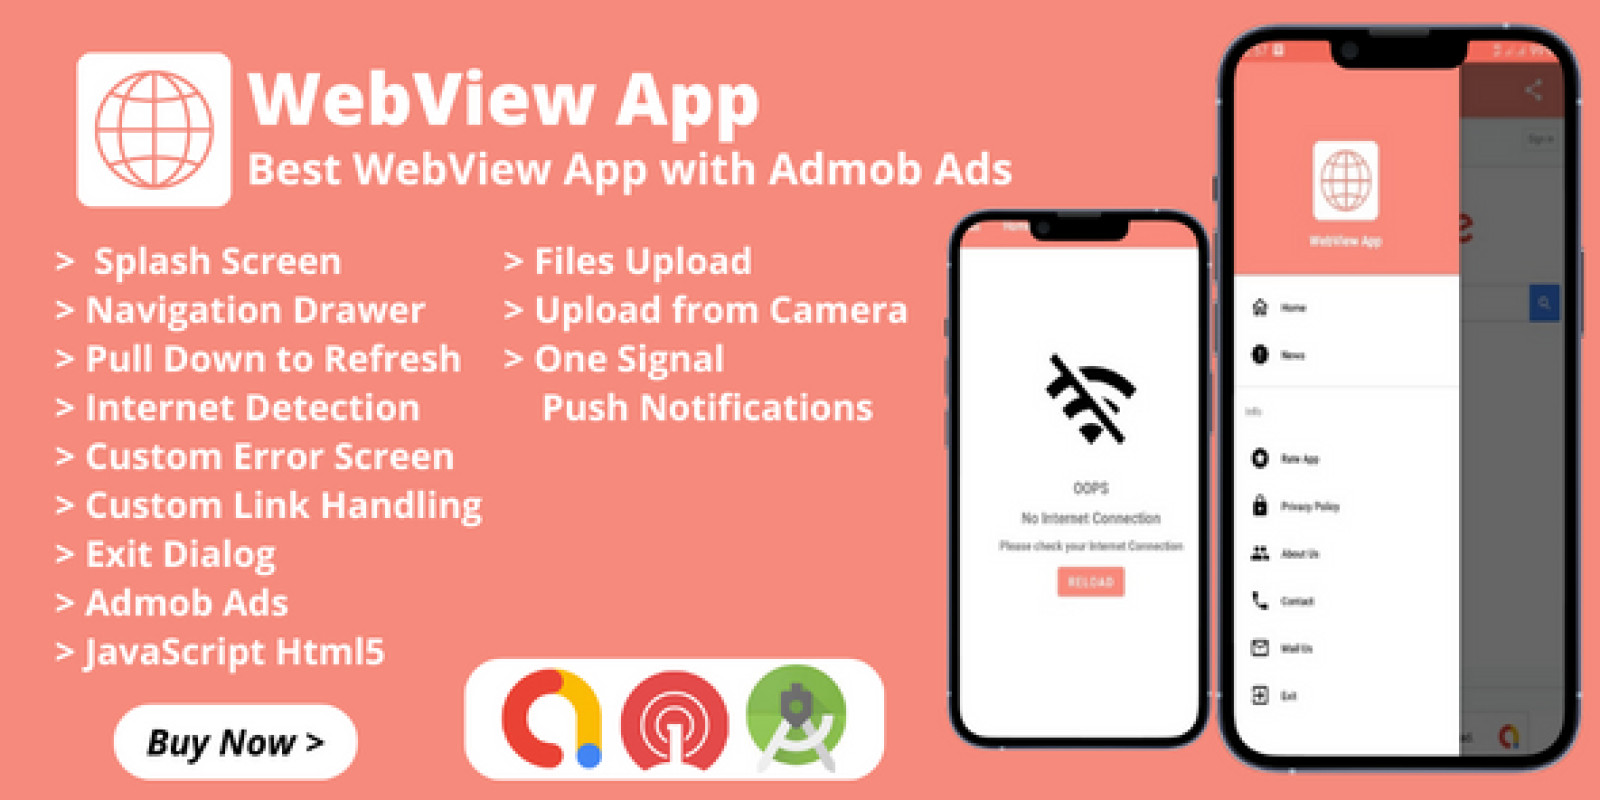 Aplicativo Android - Android Webview  com anúncios Admob Ads e notificações push